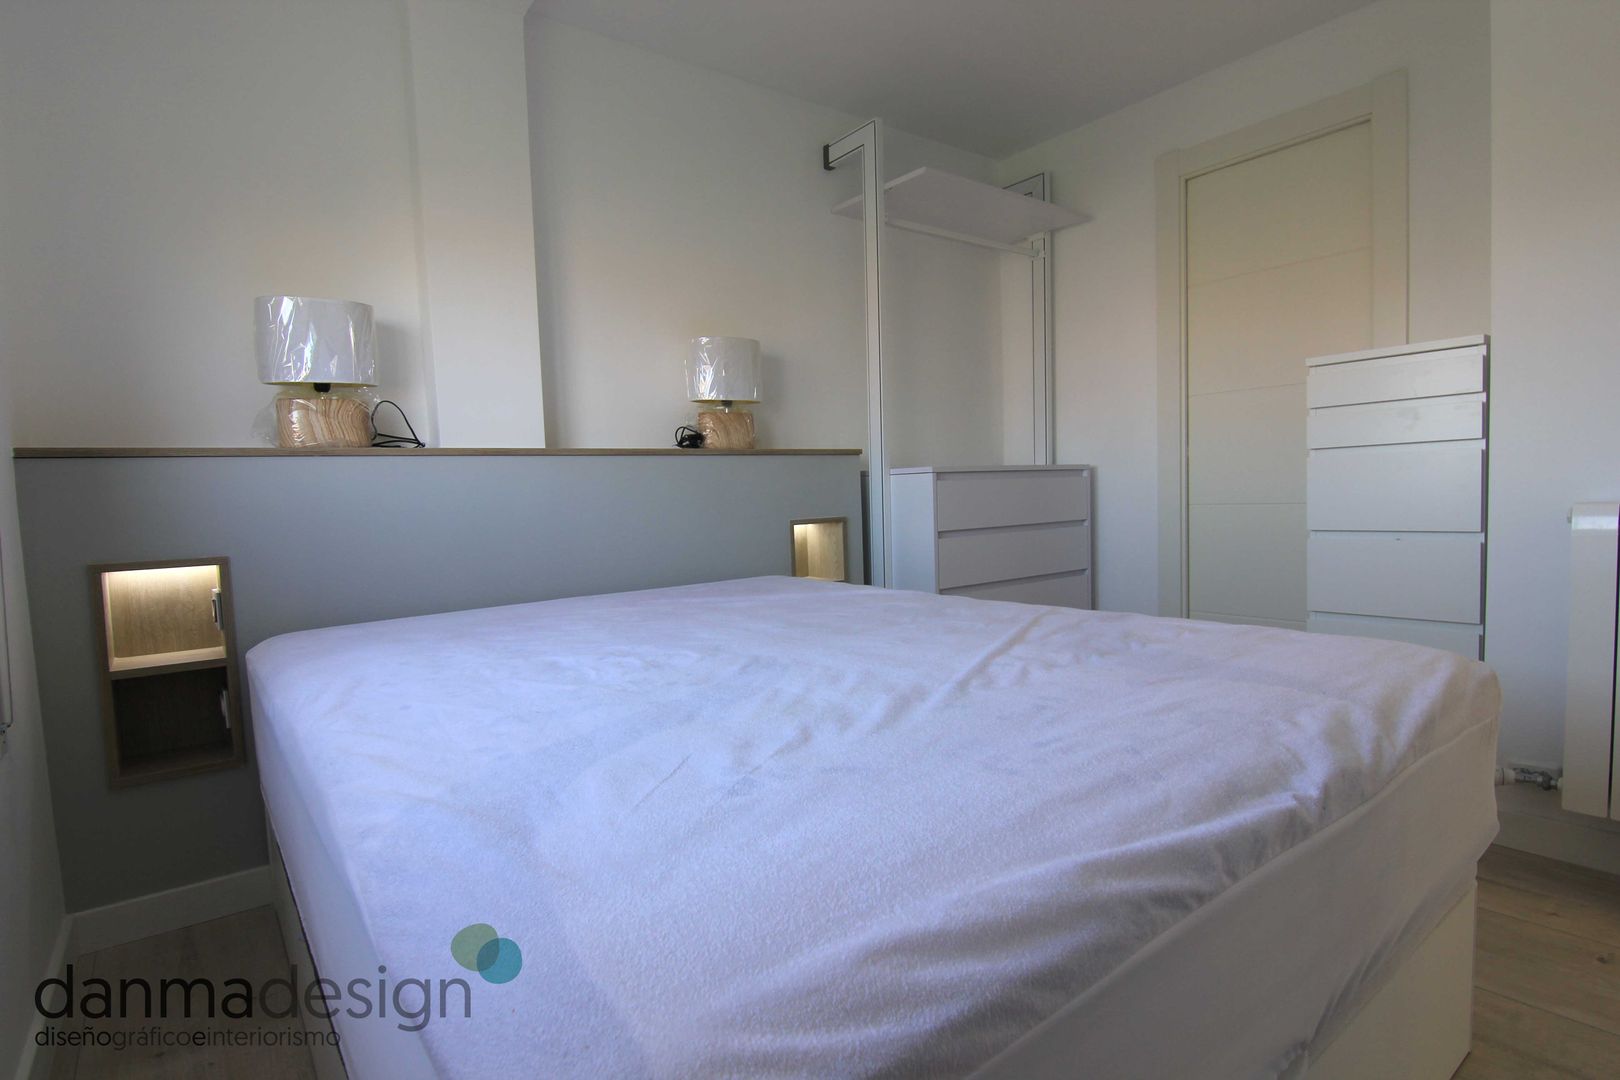 Dormitorio Principal Danma Design Dormitorios de estilo escandinavo dormitorio,interiorismo,zaragoza